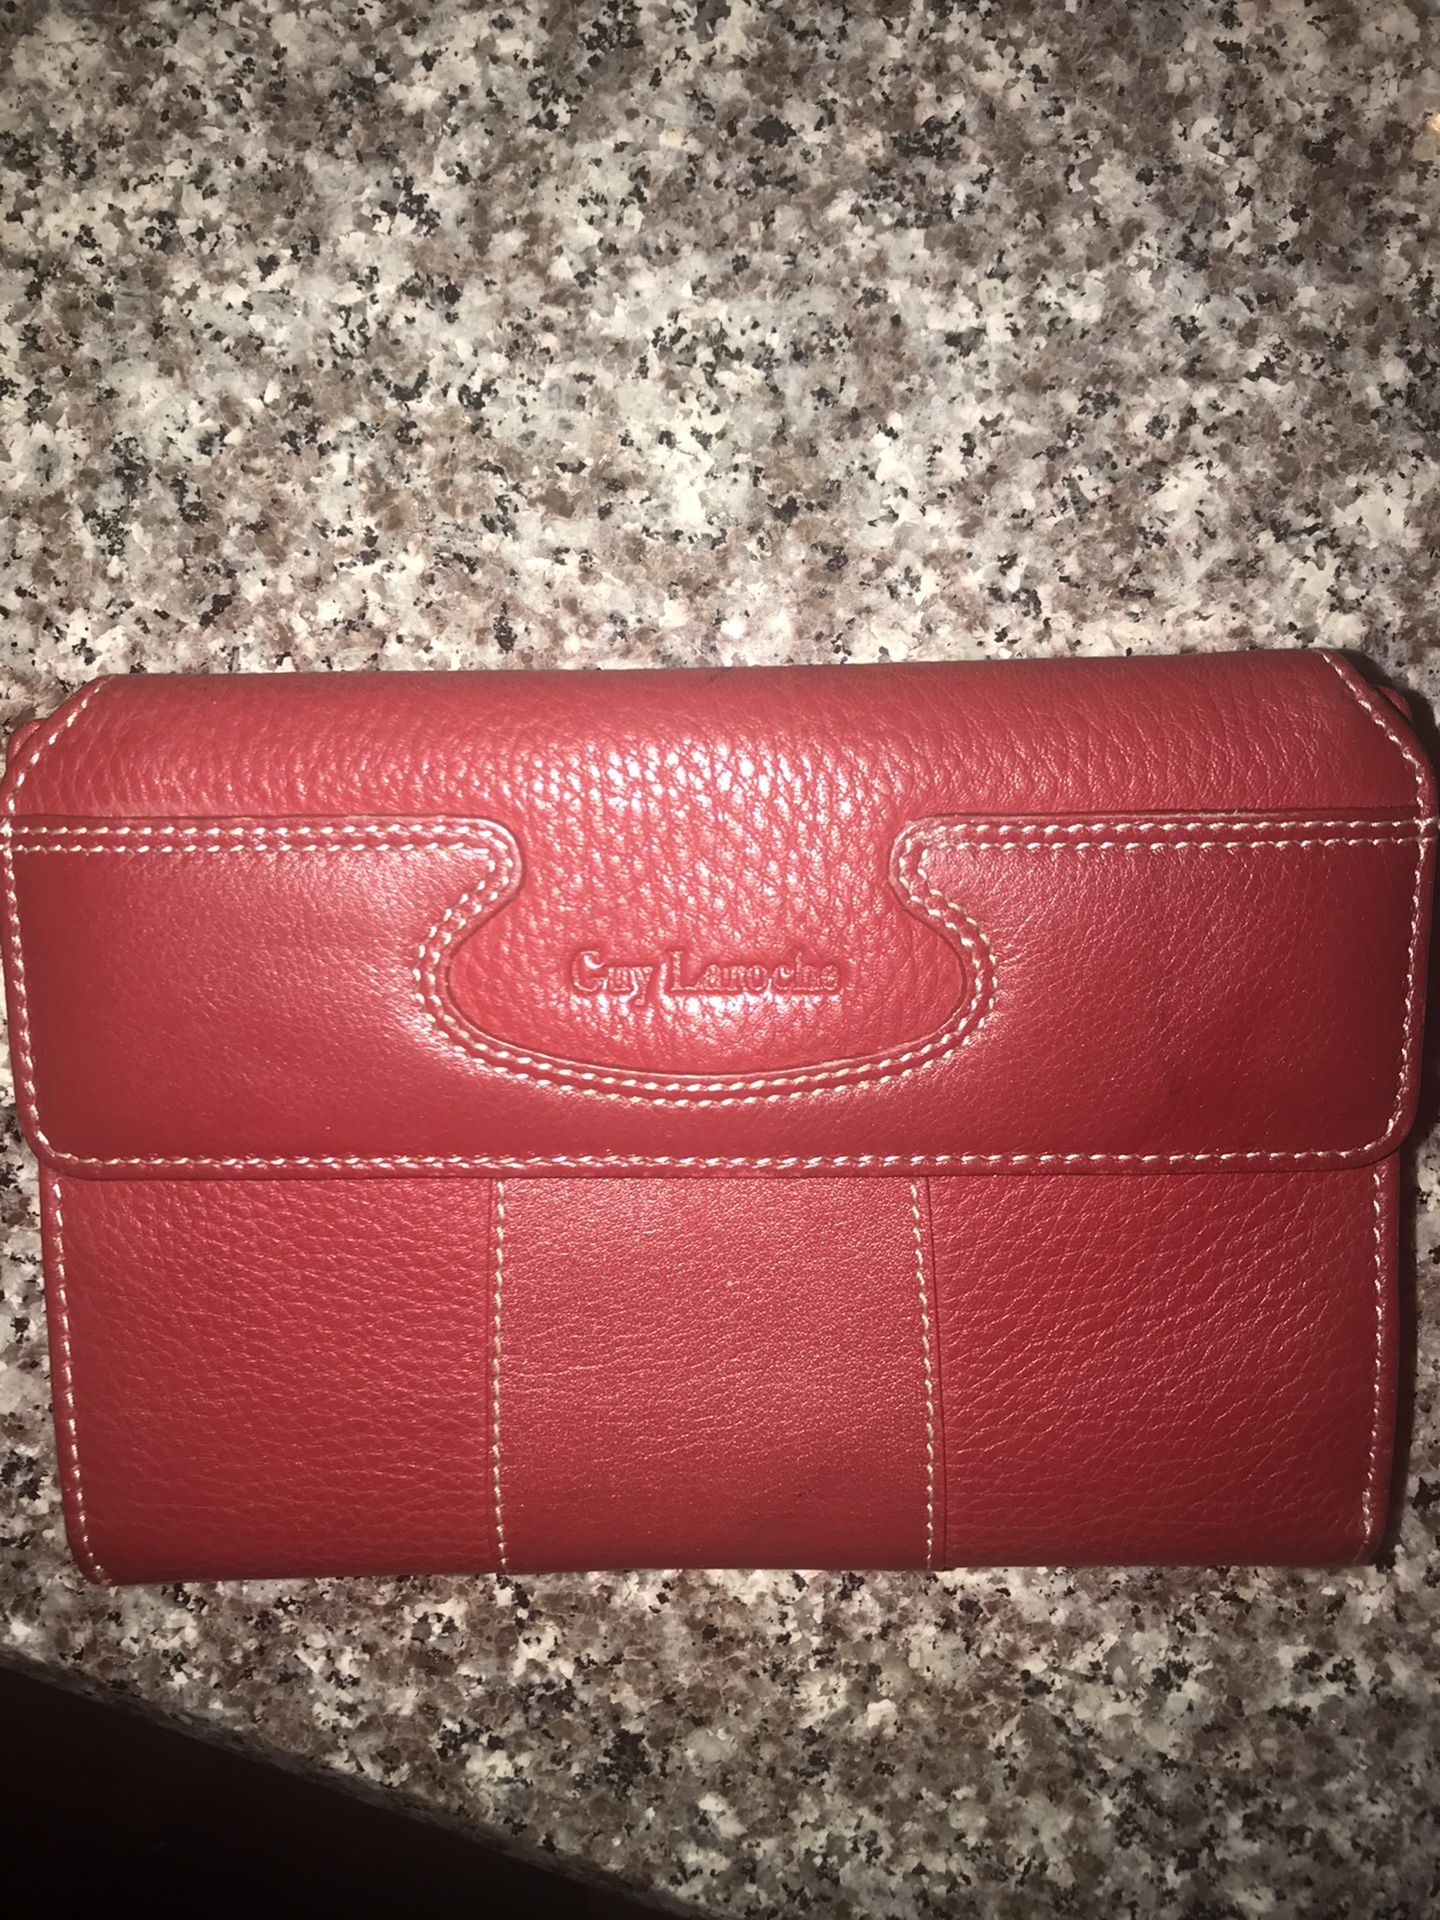 Guy Laroche Red Leather Wallet